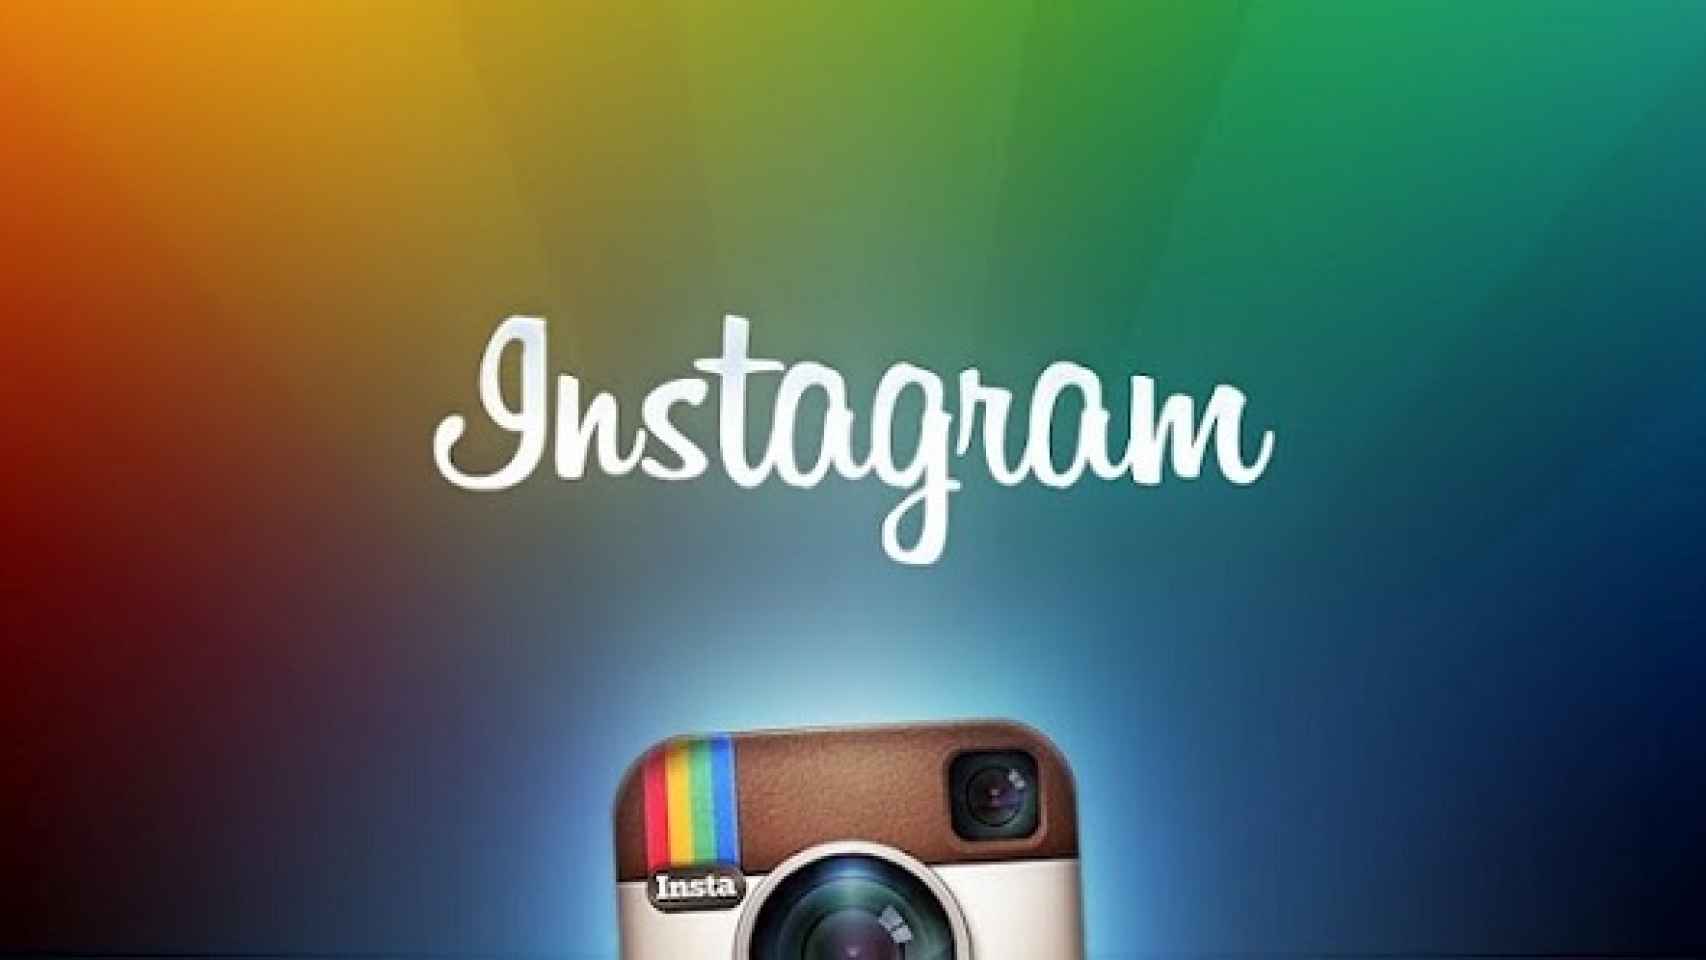 Descarga los vídeos de Instagram desde tu Android [Tutorial]